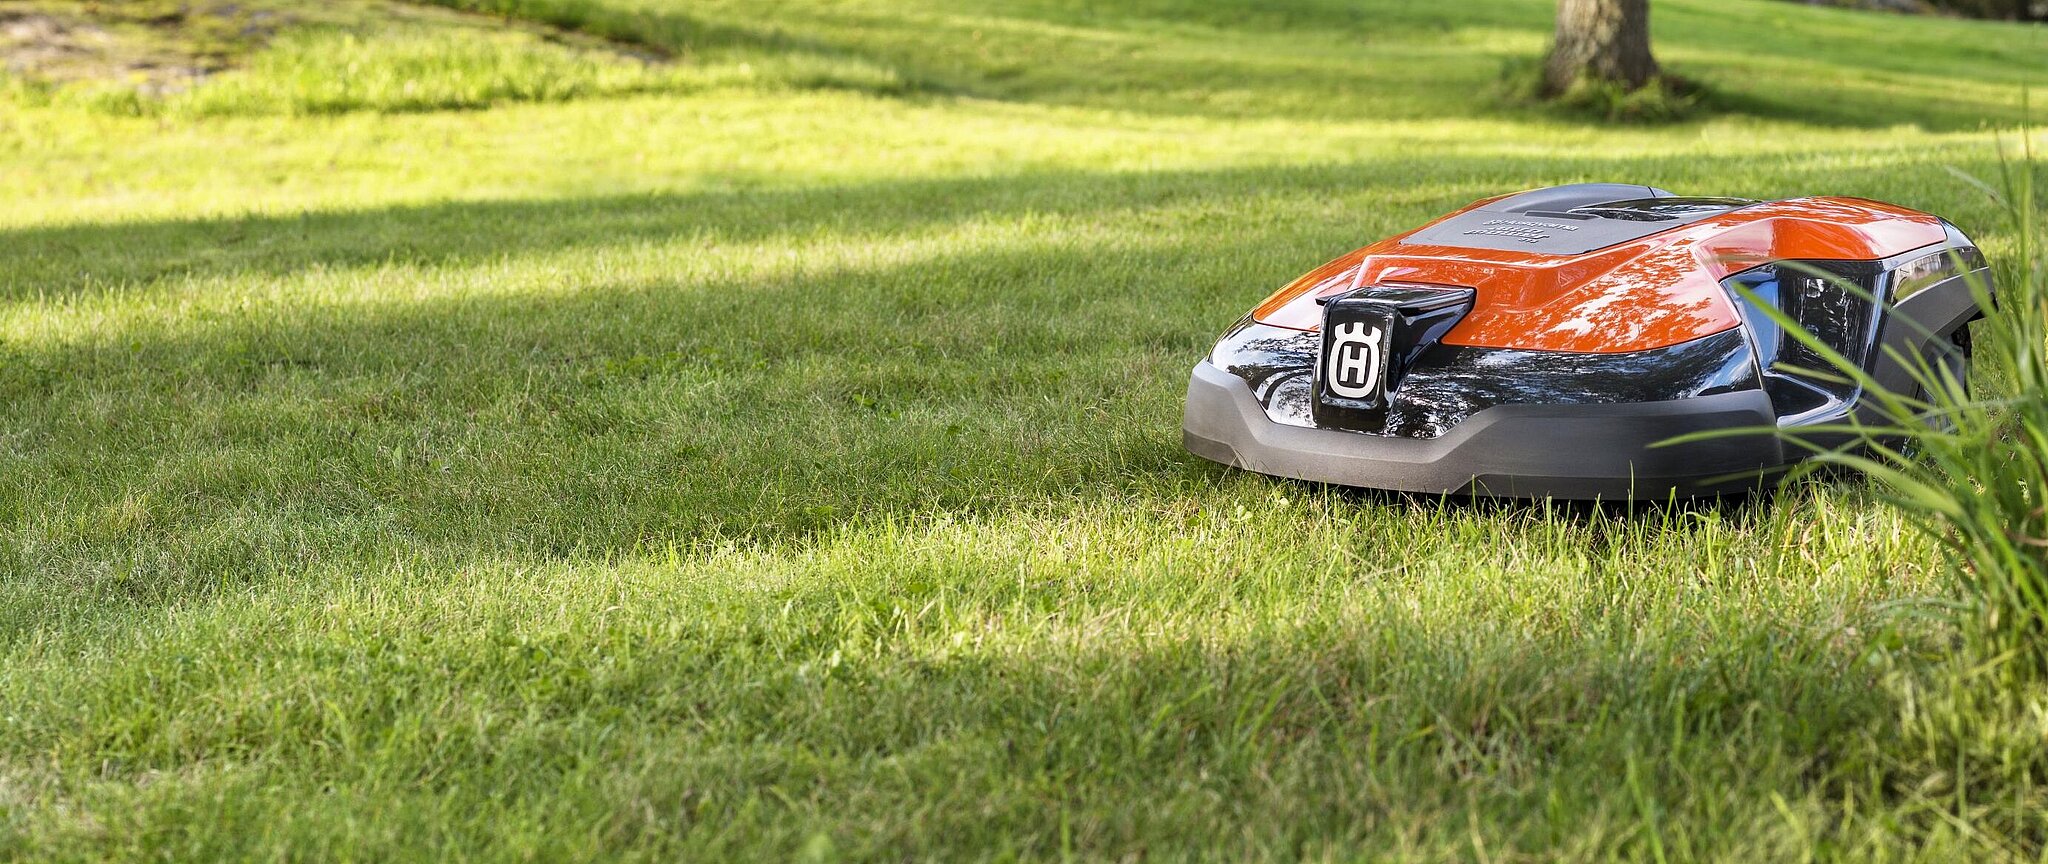 Husqvarna Mähroboter in der Farbe Orange fährt über eine Rasenfläche